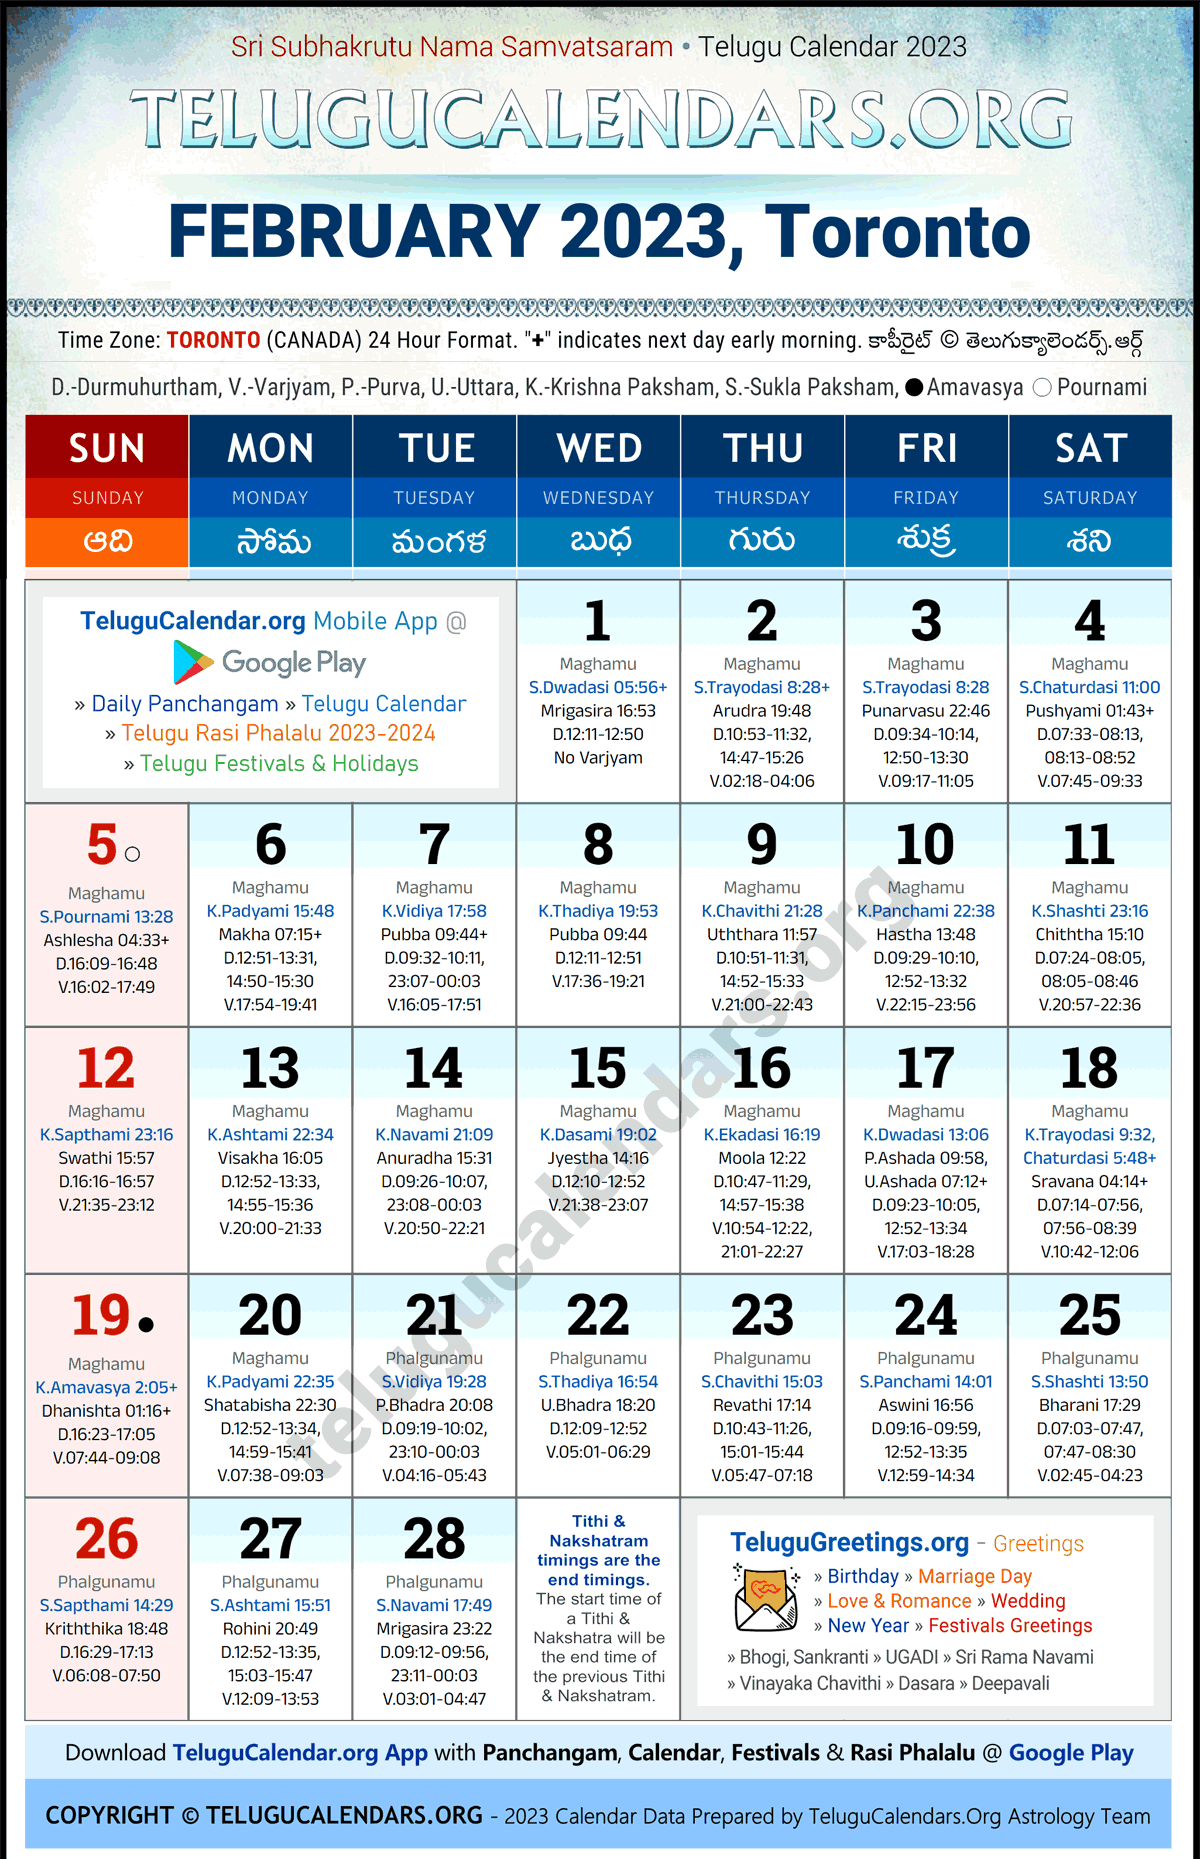 Telugu Calendar 2023 February Festivals for Toronto